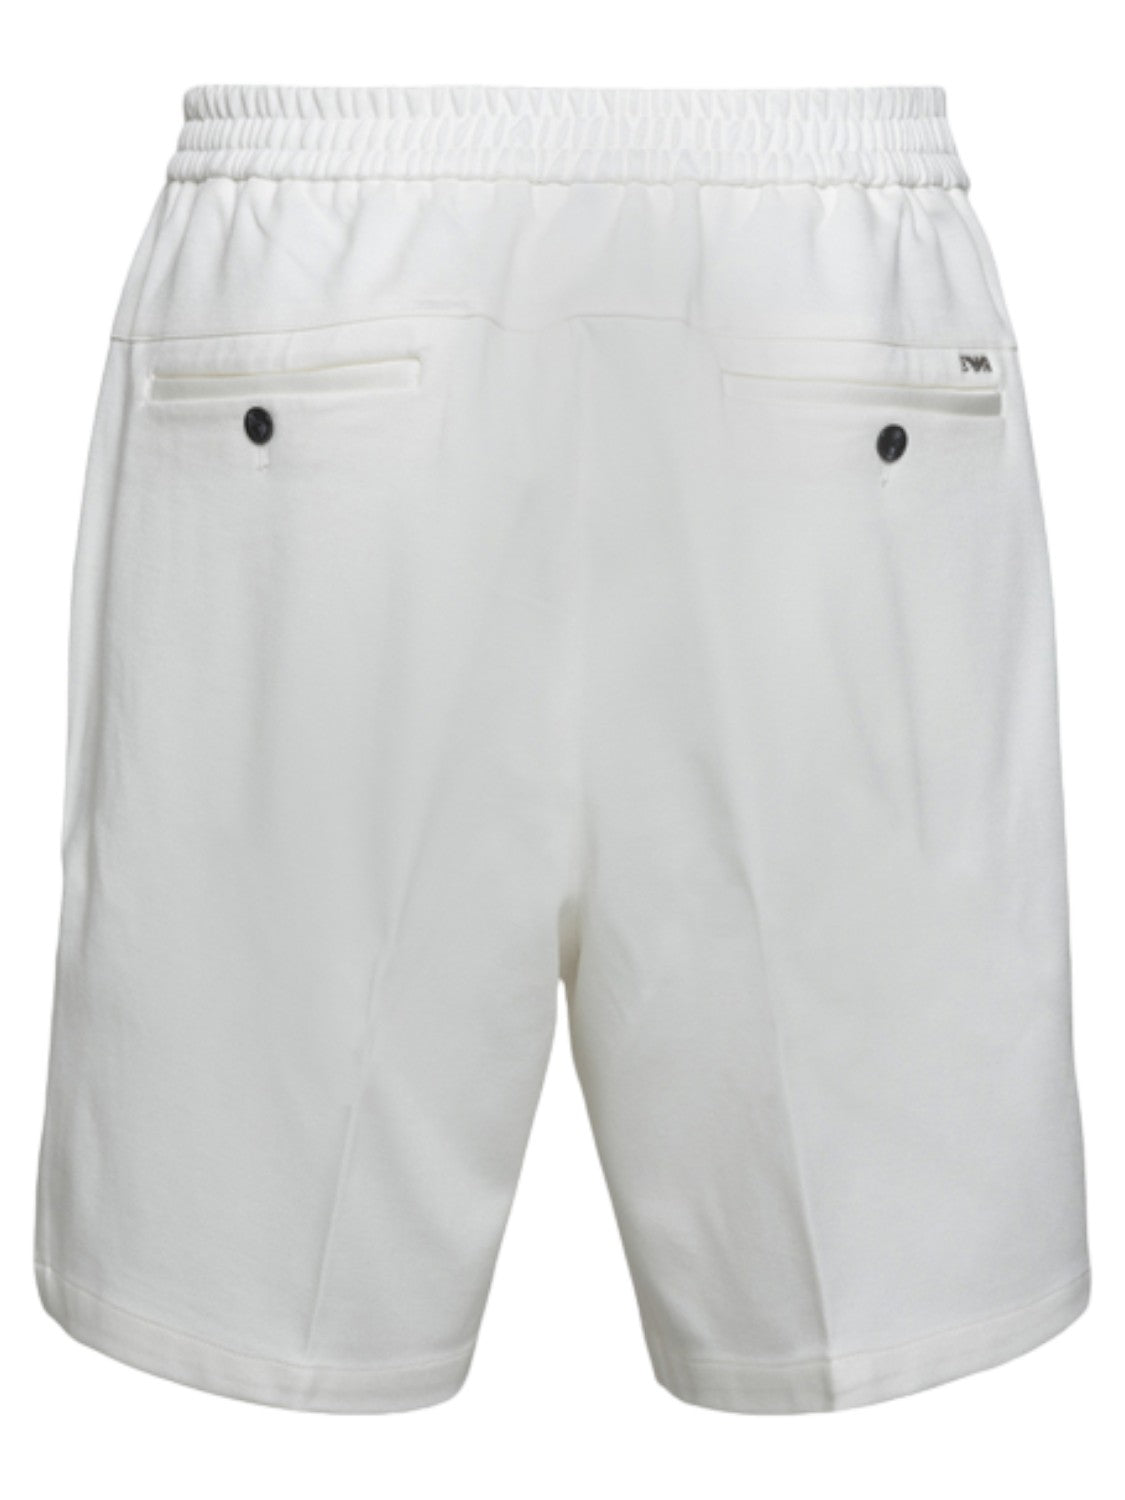 Pantaloncini Sportivi Bianchi con Logo-Emporio Armani-Shorts-Vittorio Citro Boutique